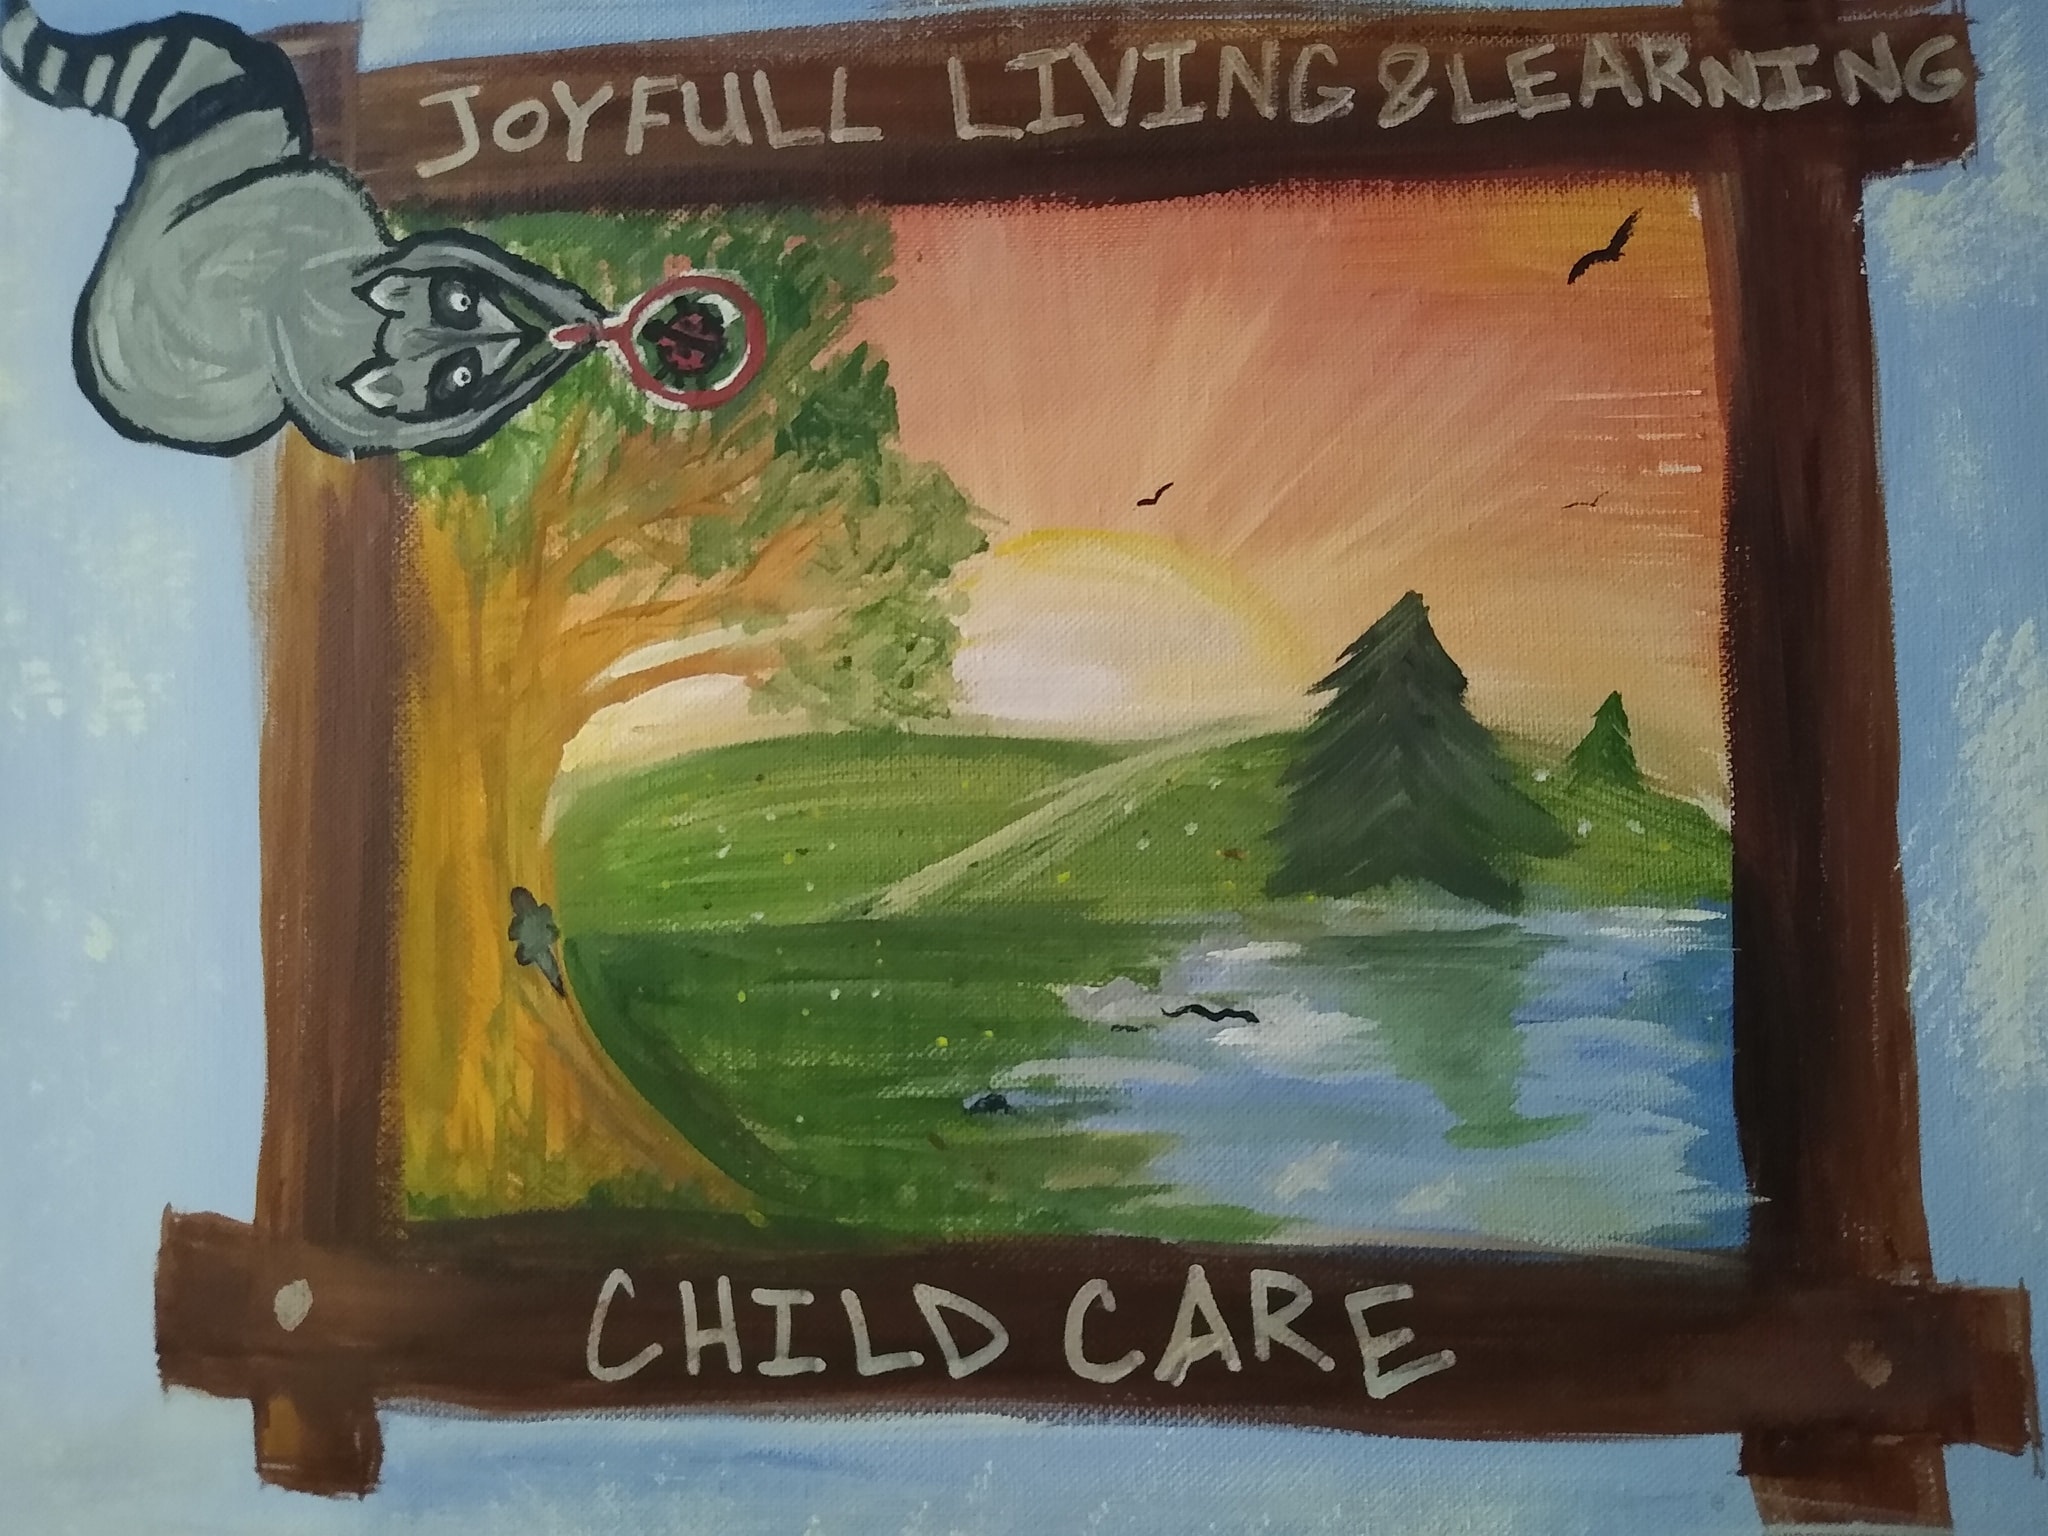 Joyful Living & Learning Childcare